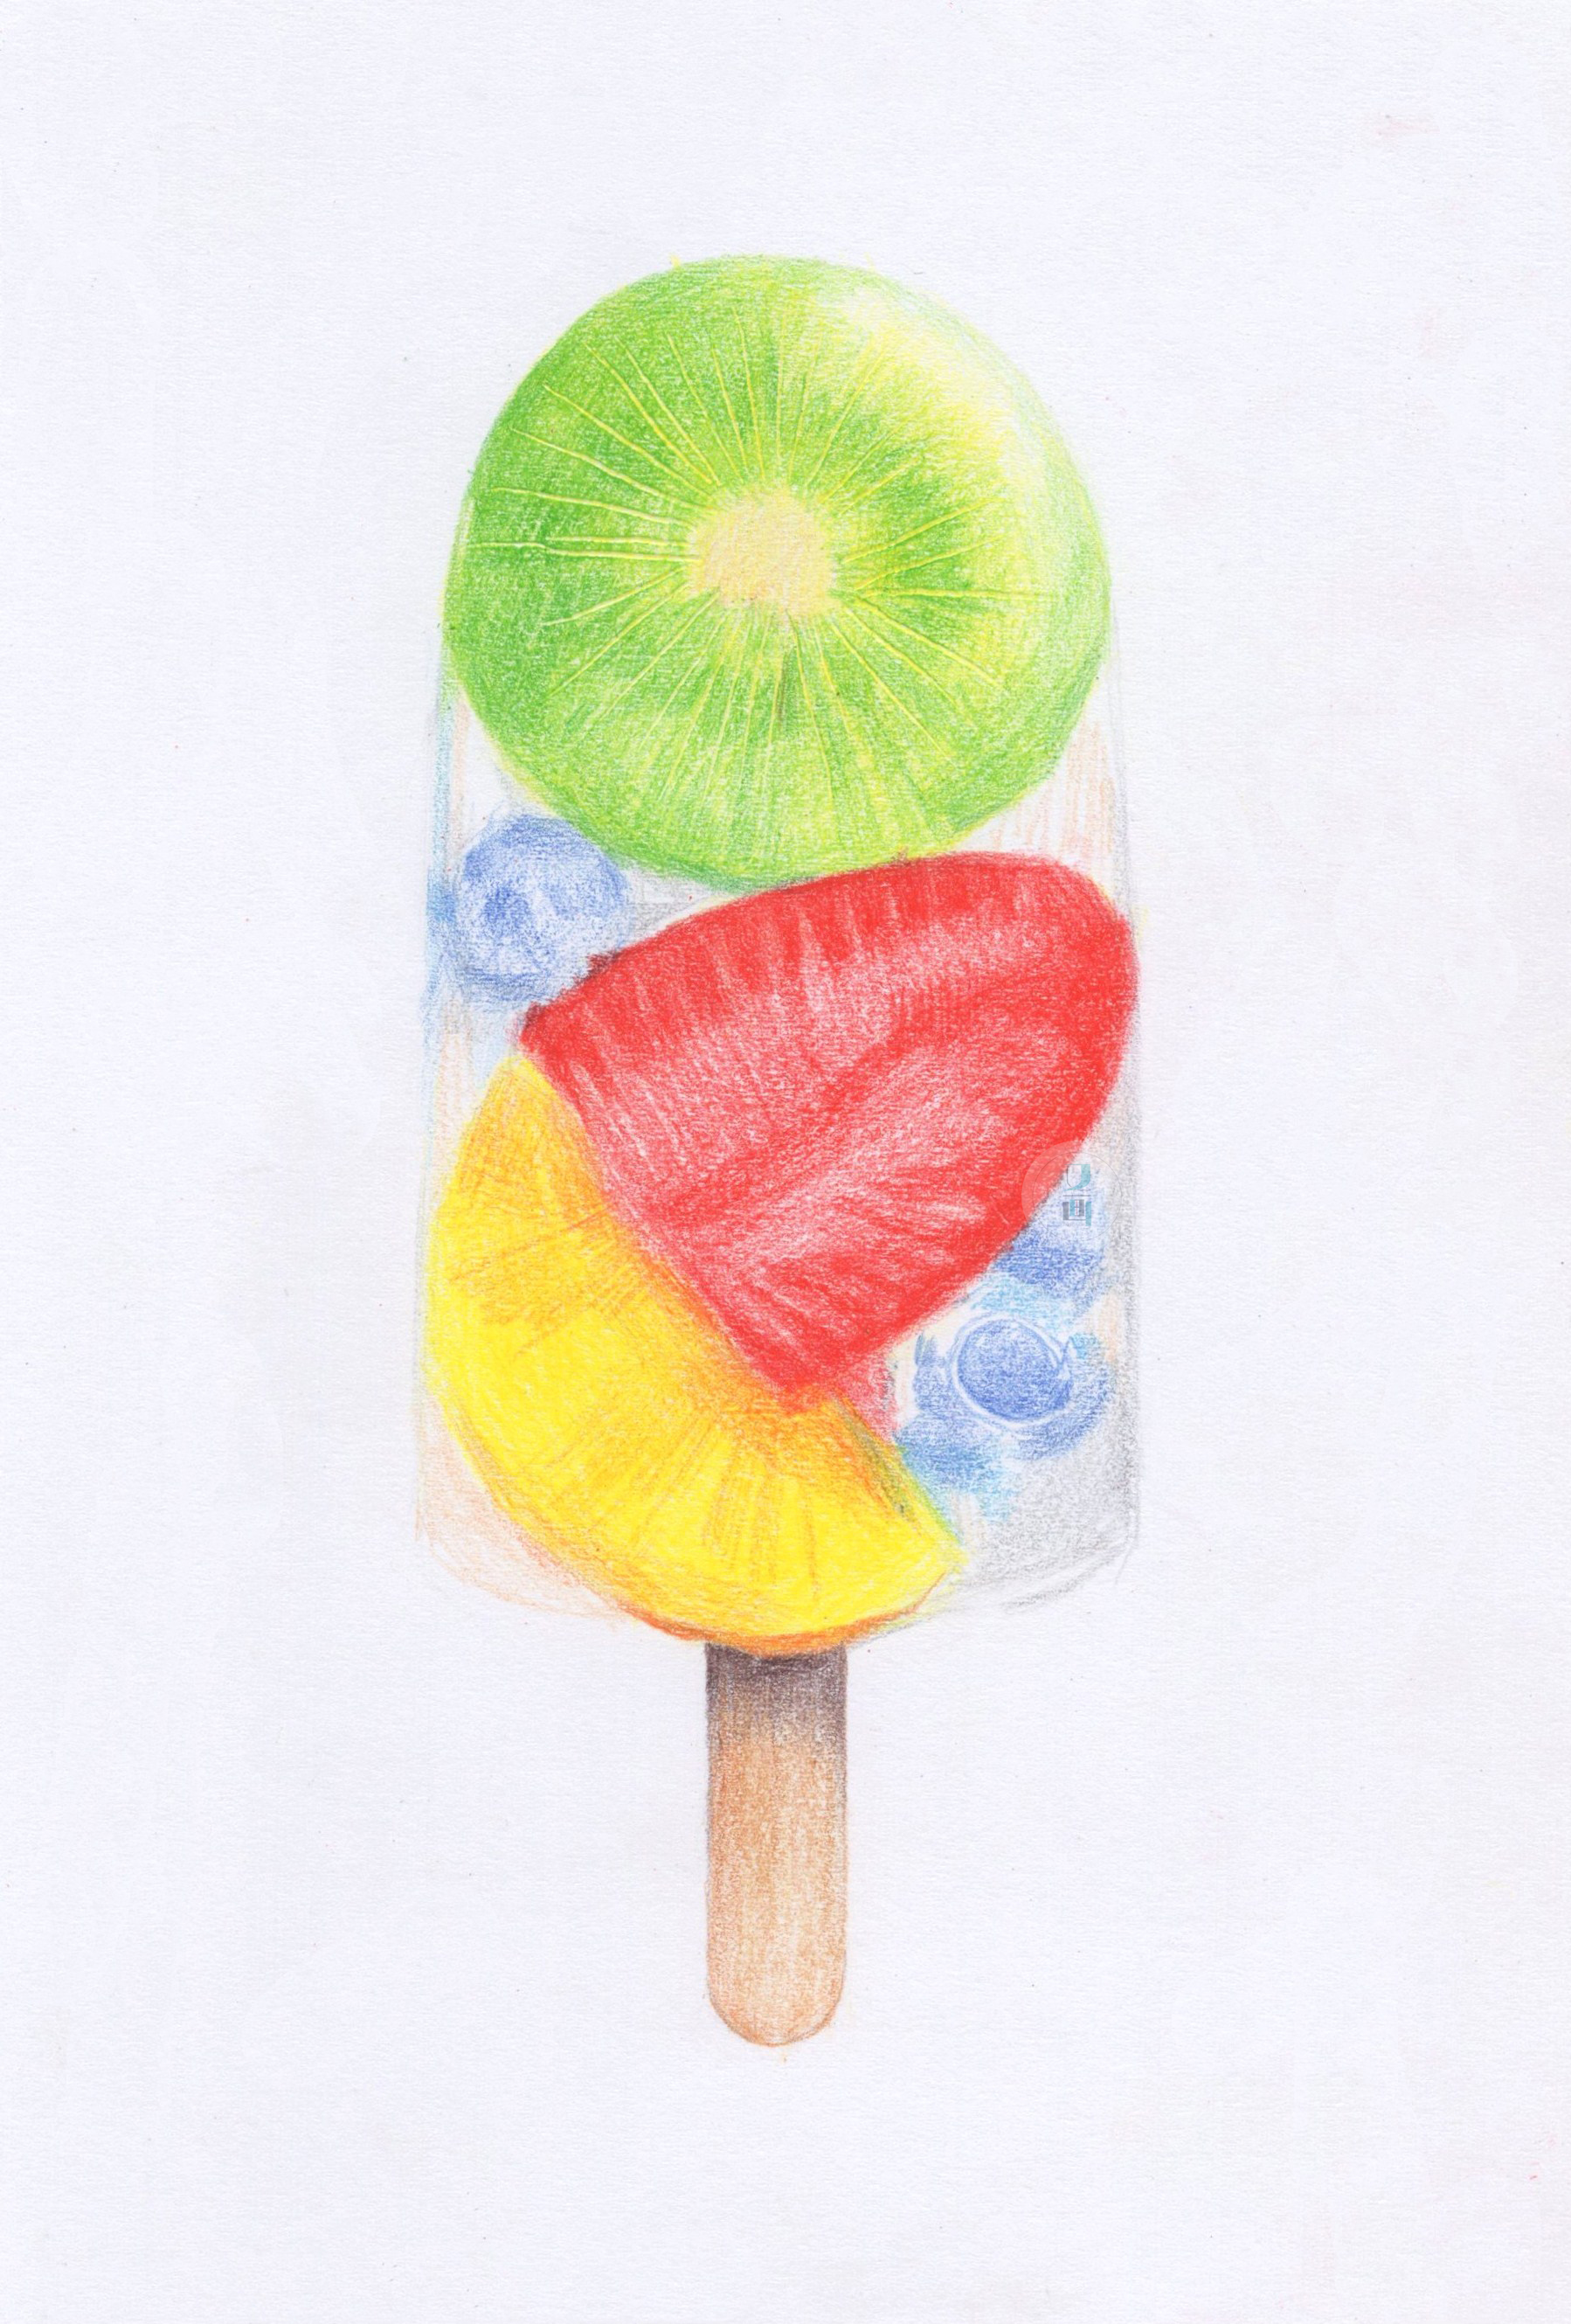 【彩铅】缤纷夏日,来一支水果冰棍吧!